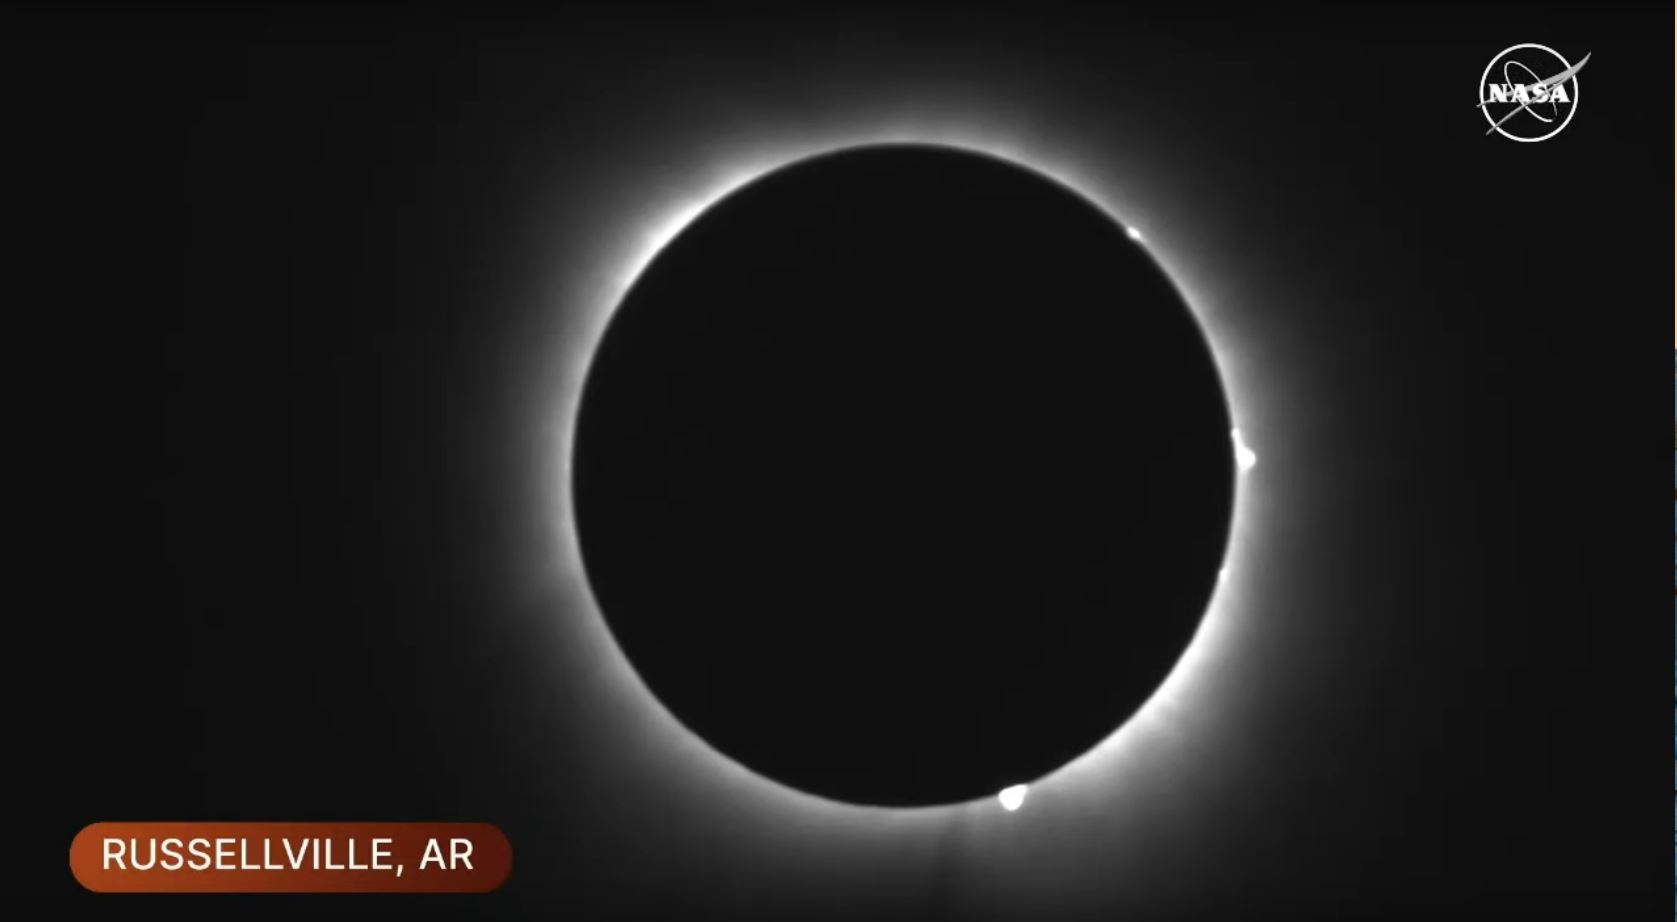 Fotograma de la transmisión en vivo de la NASA del eclipse total en Russellville, Arkansas, el 8 de marzo de 2024.